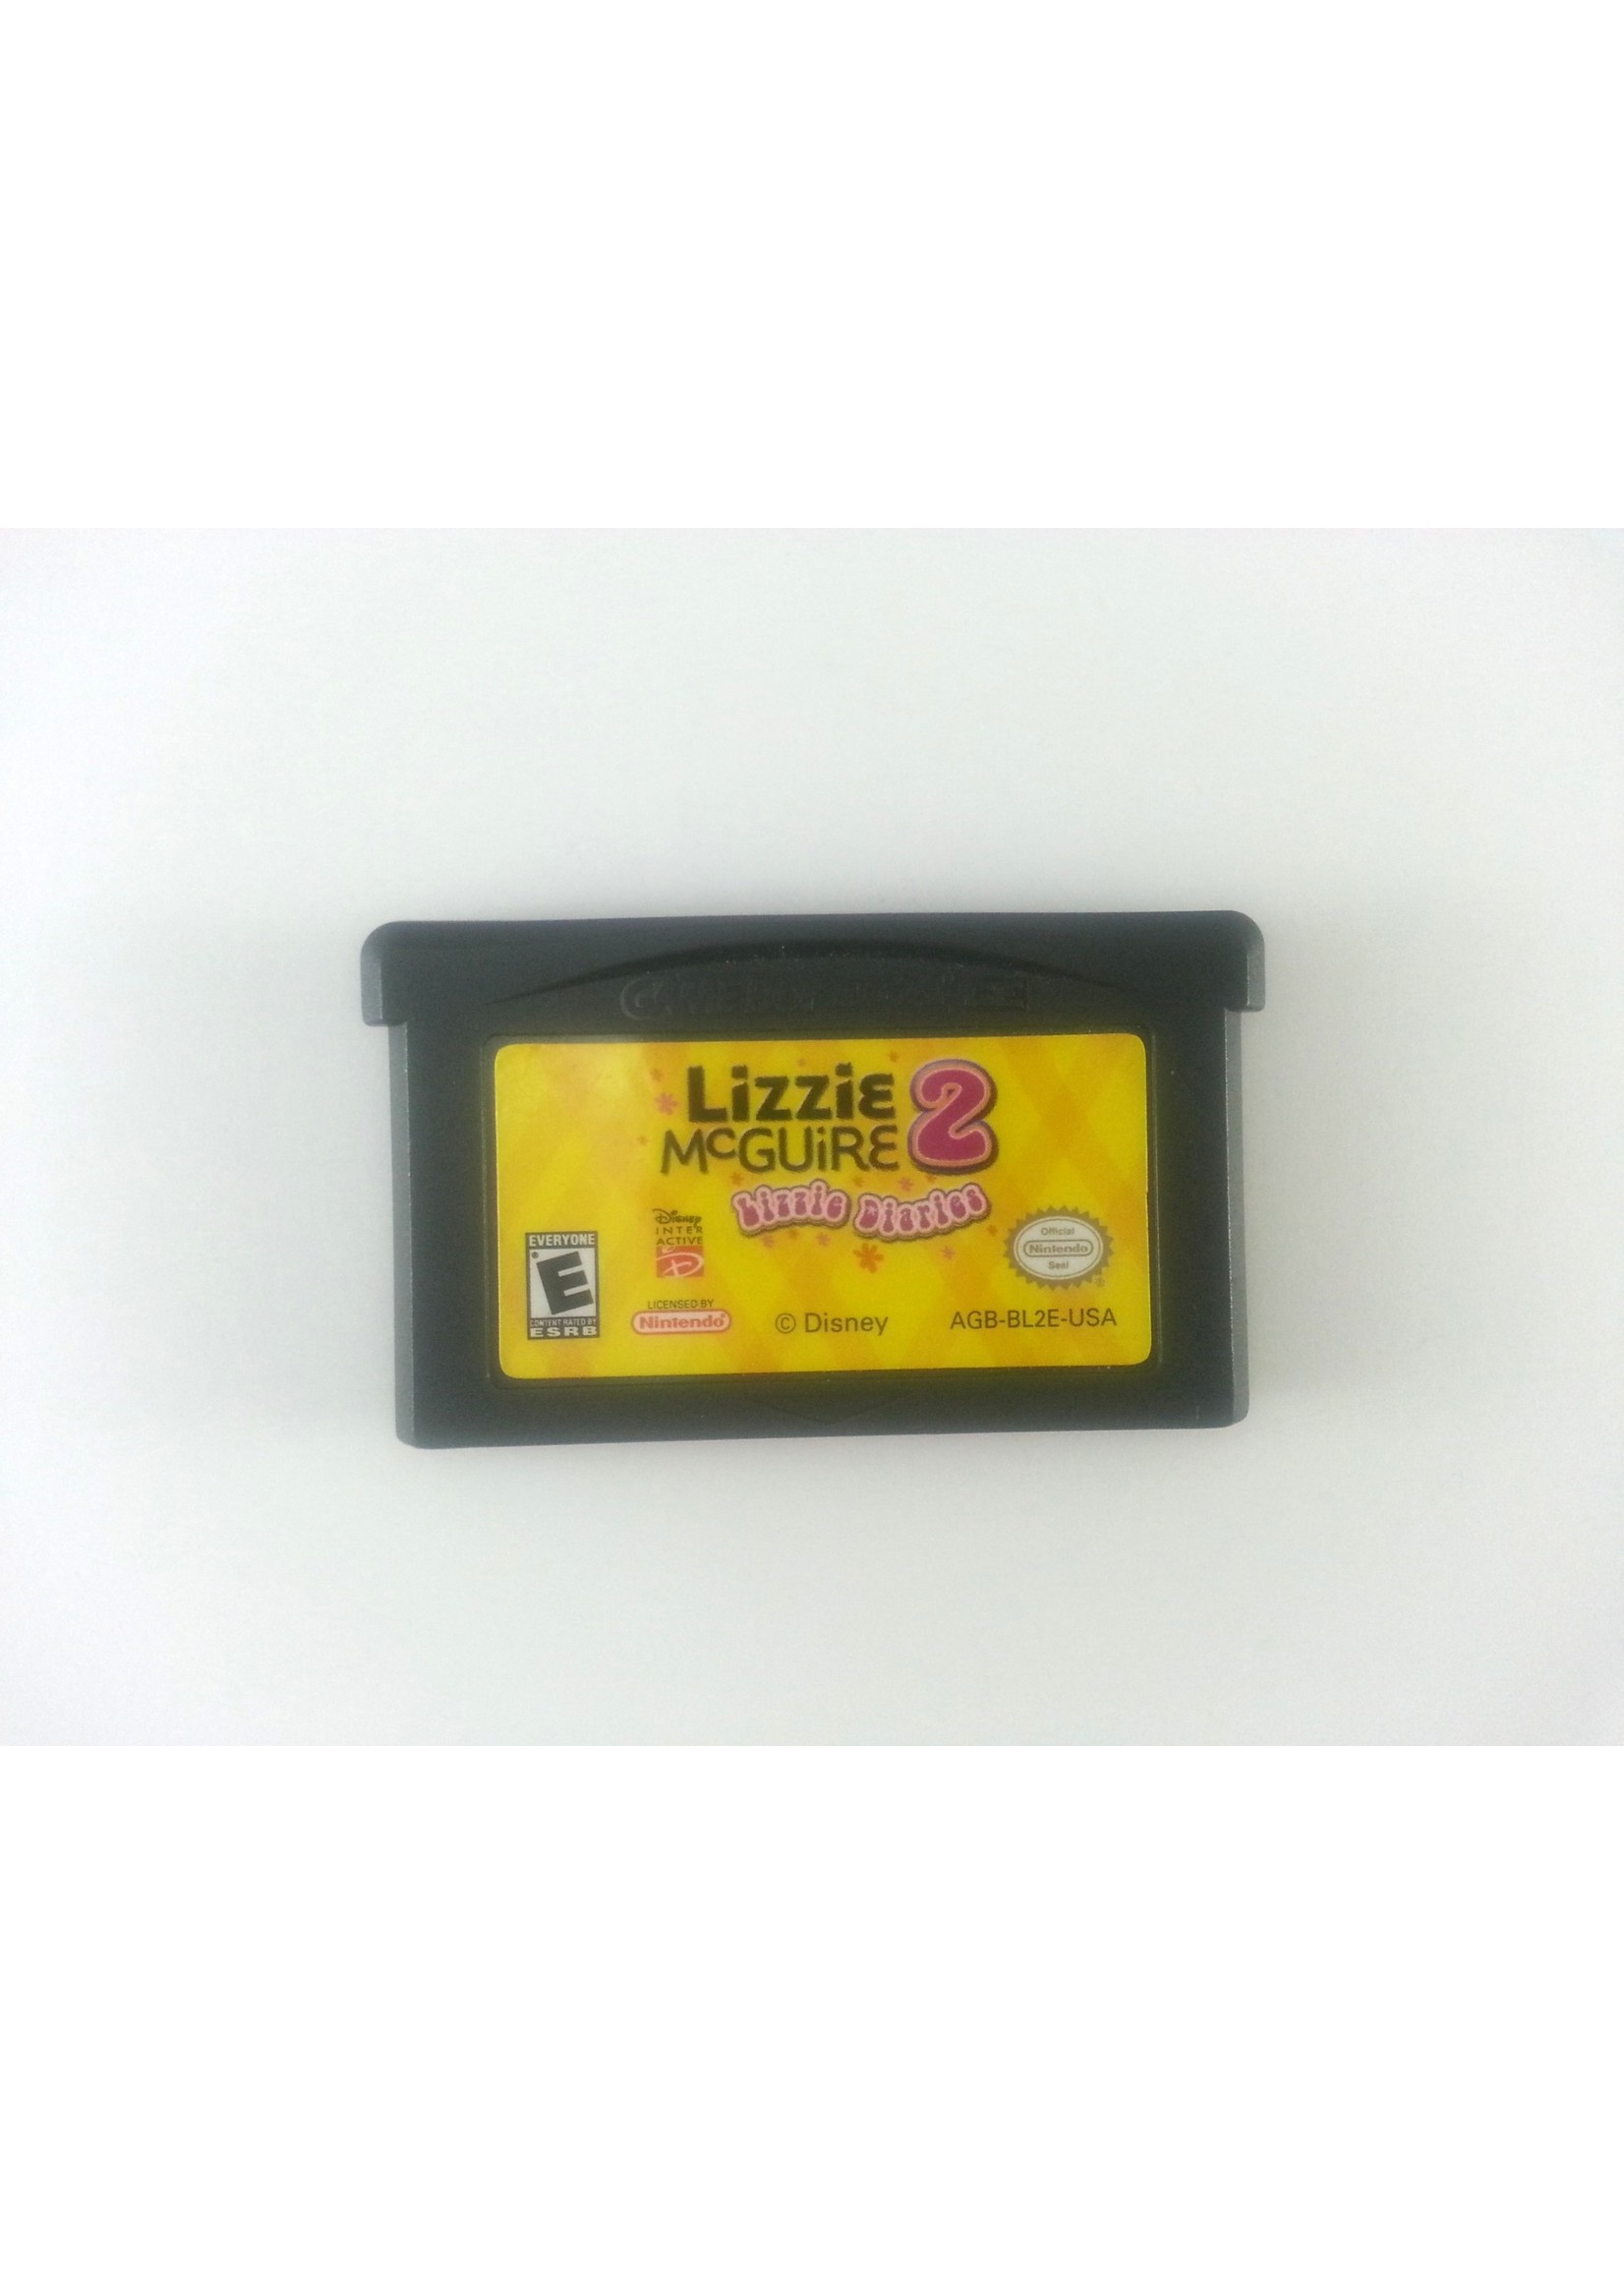 Nintendo Gameboy Advance Lizzie McGuire 2 Lizzie Diaries